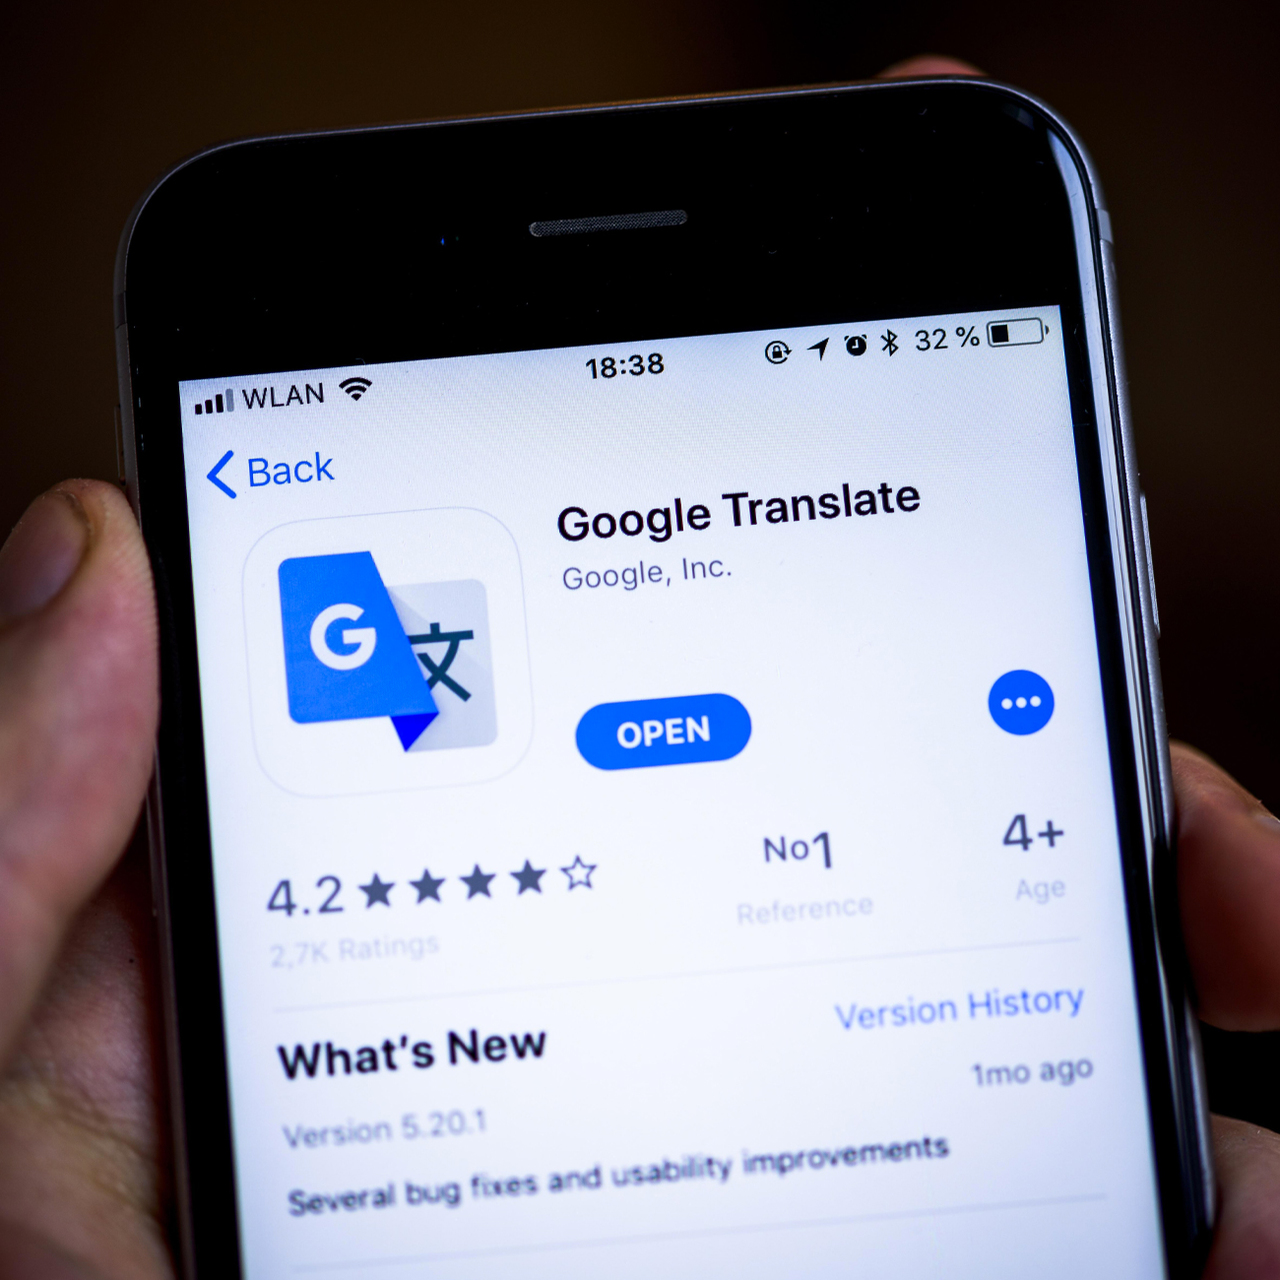 Гугл переводчик через камеру телефона. Google Translate.